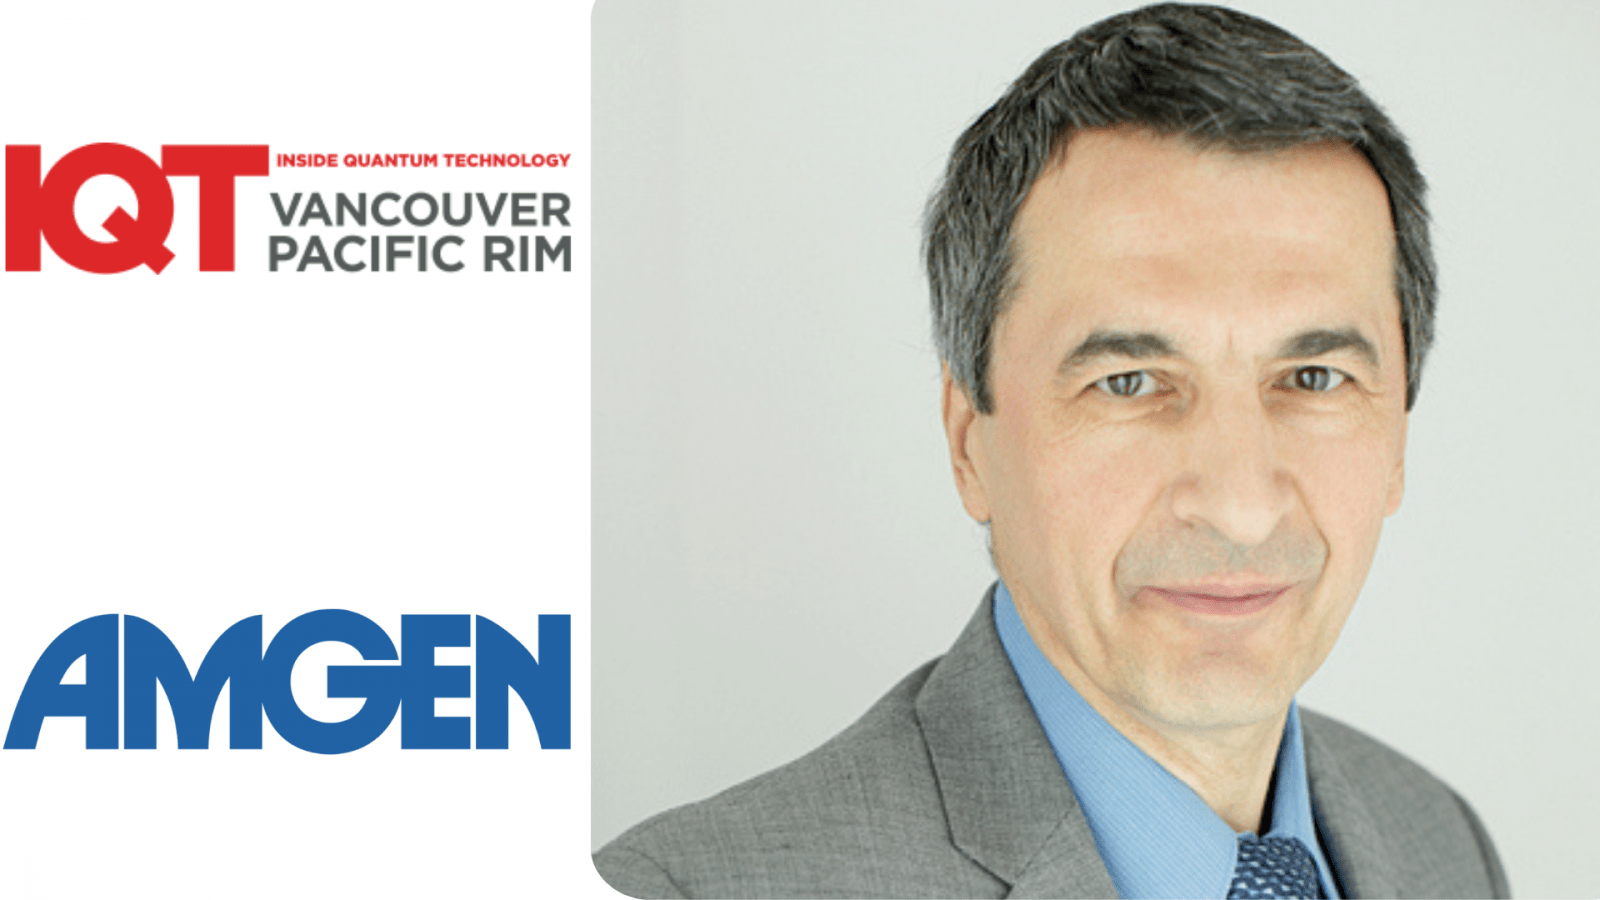 Zoran Krunic, starszy menedżer ds. nauki o danych w firmie Amgen, jest prelegentem IQT Vancouver/Pacific Rim w roku 2024